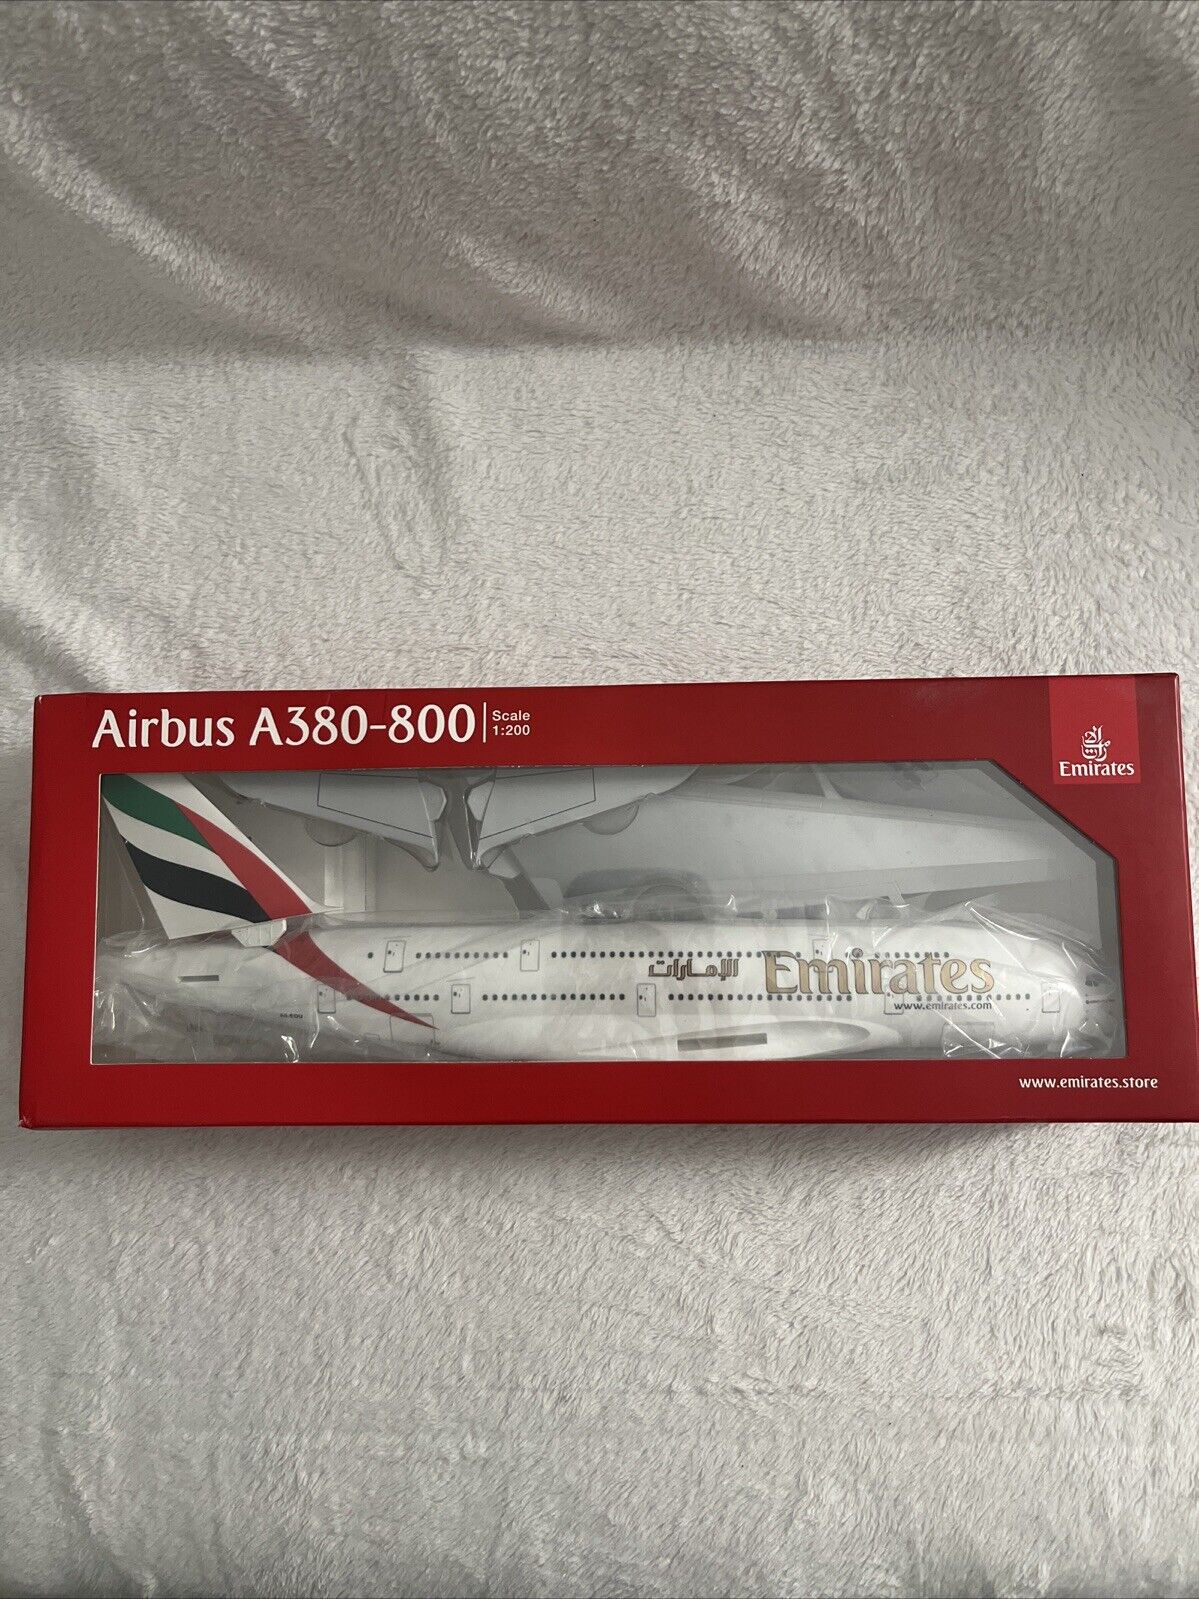 Emirates Airbus A380-800 Model 1:200